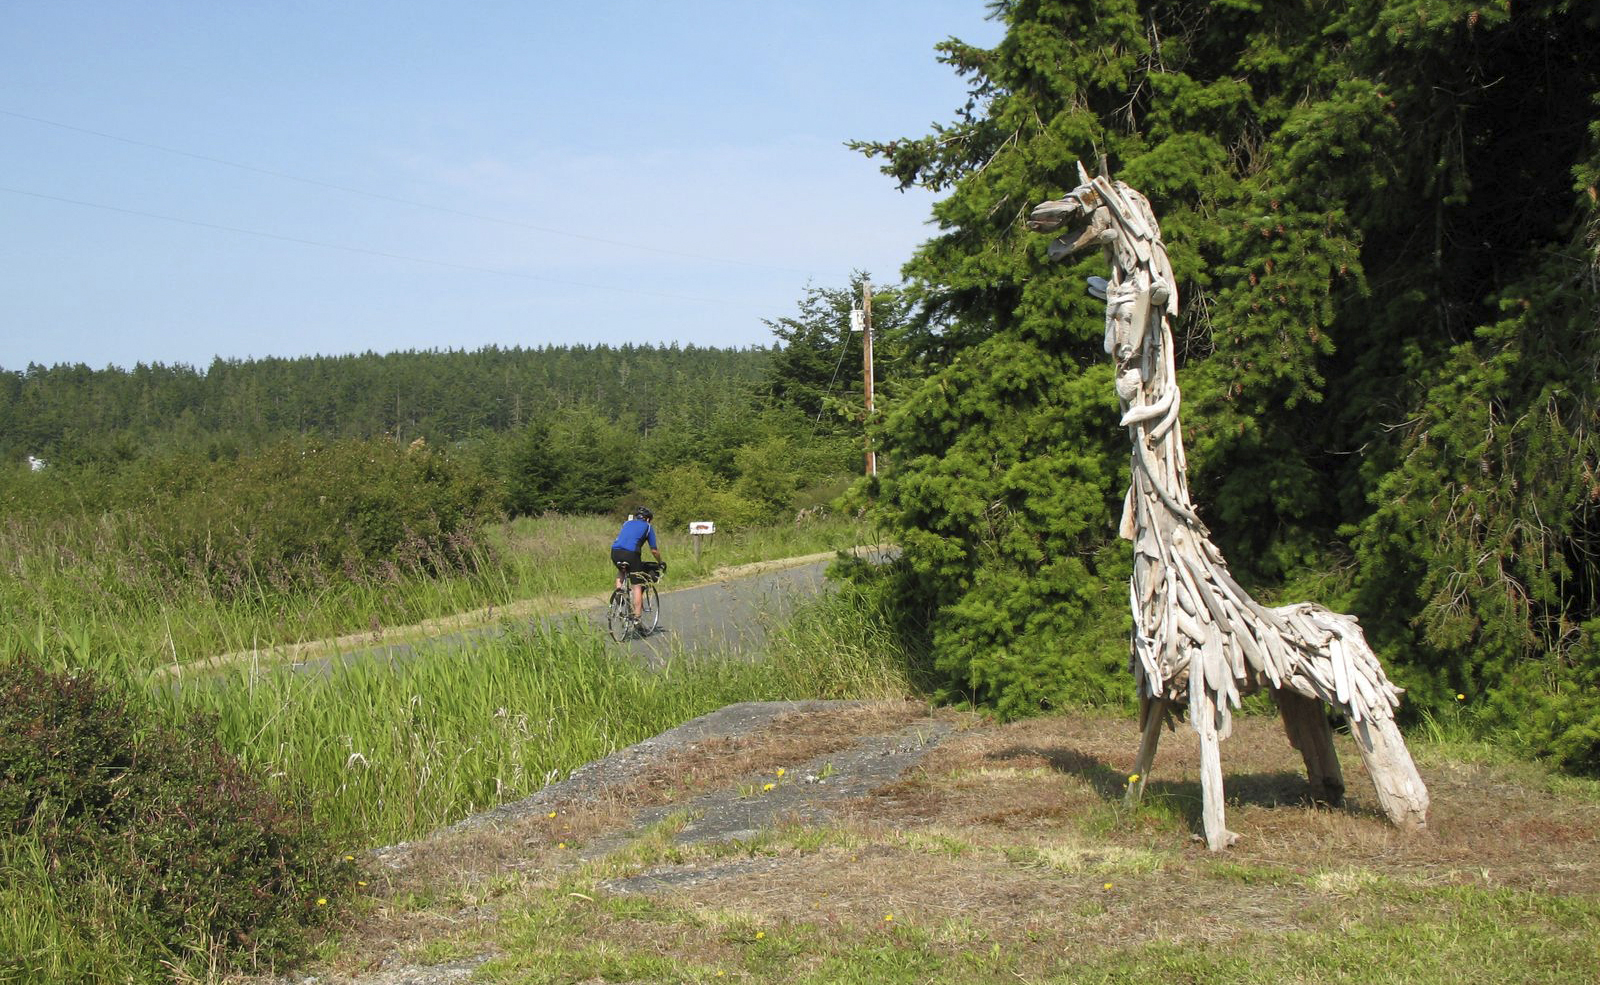 A bicyclist passes a wooden alpaca sculpture along a road